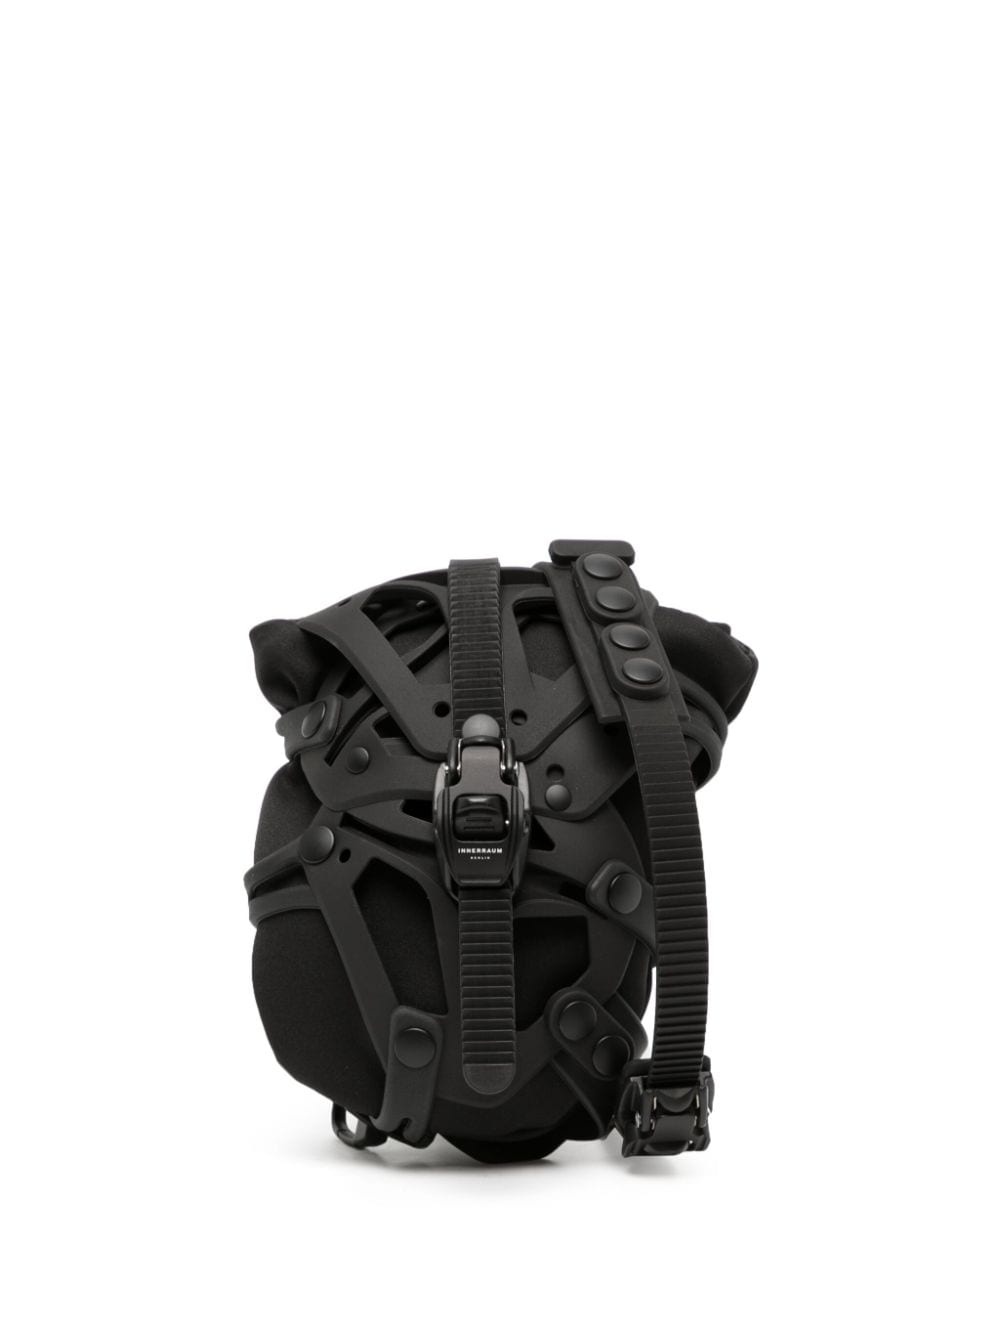 Innerraum Object I31 Funcase shoulder bag | REVERSIBLE